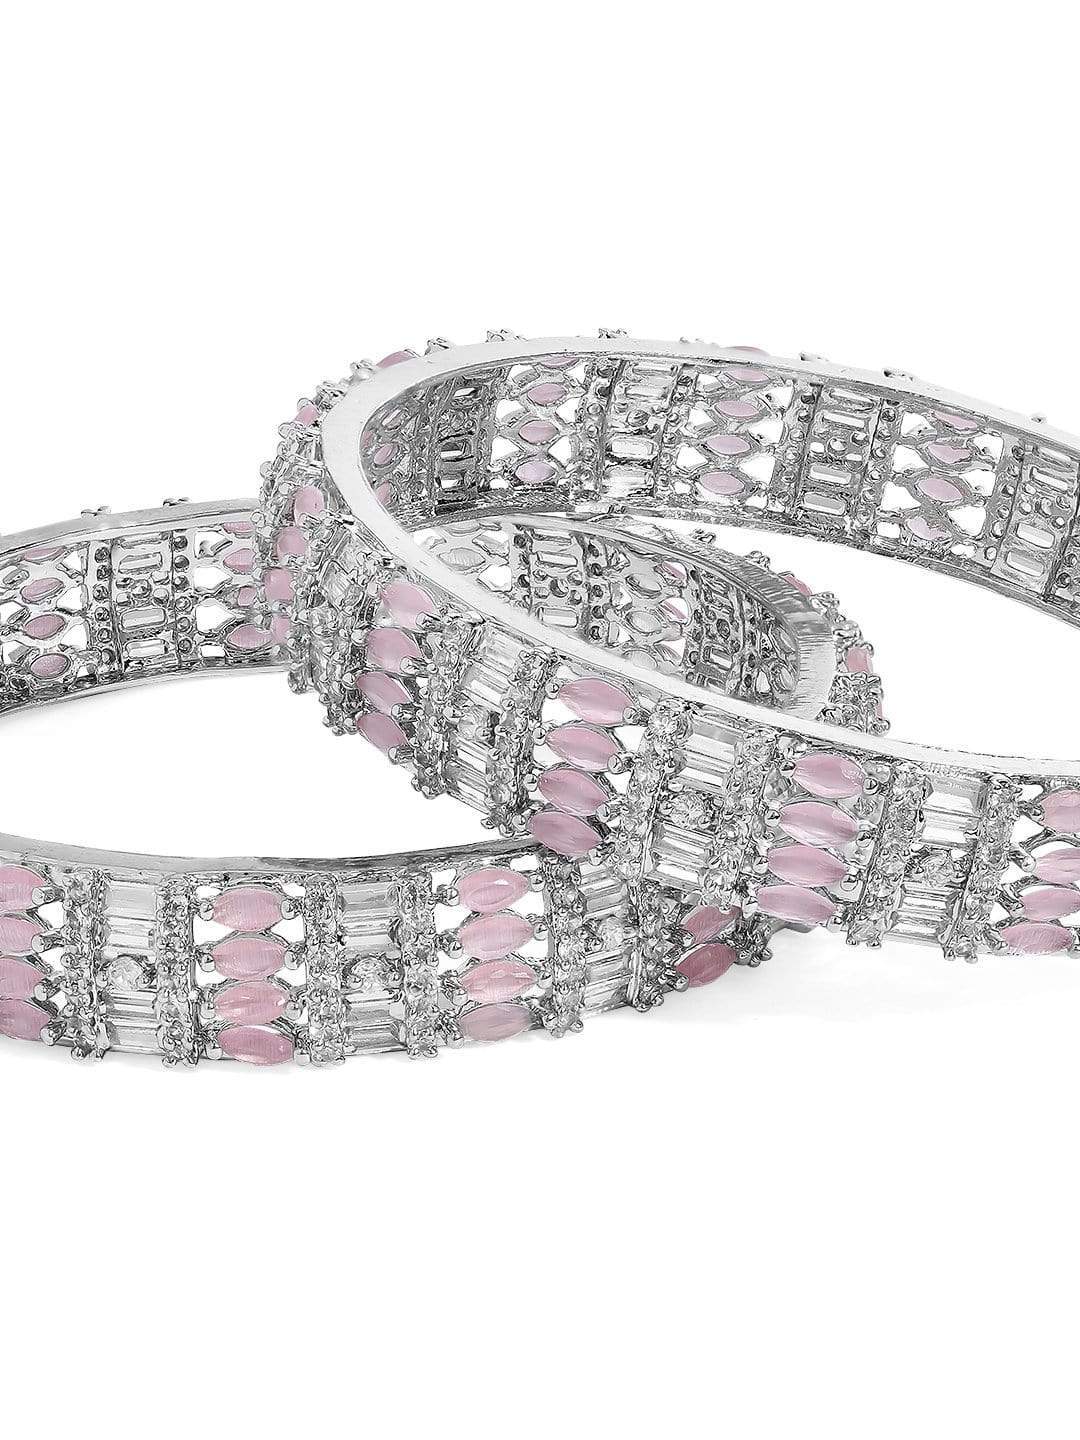 Pink Bracelet for Girls  Bracelet for Office  Narin Minimal Bracelet by  Blingvine